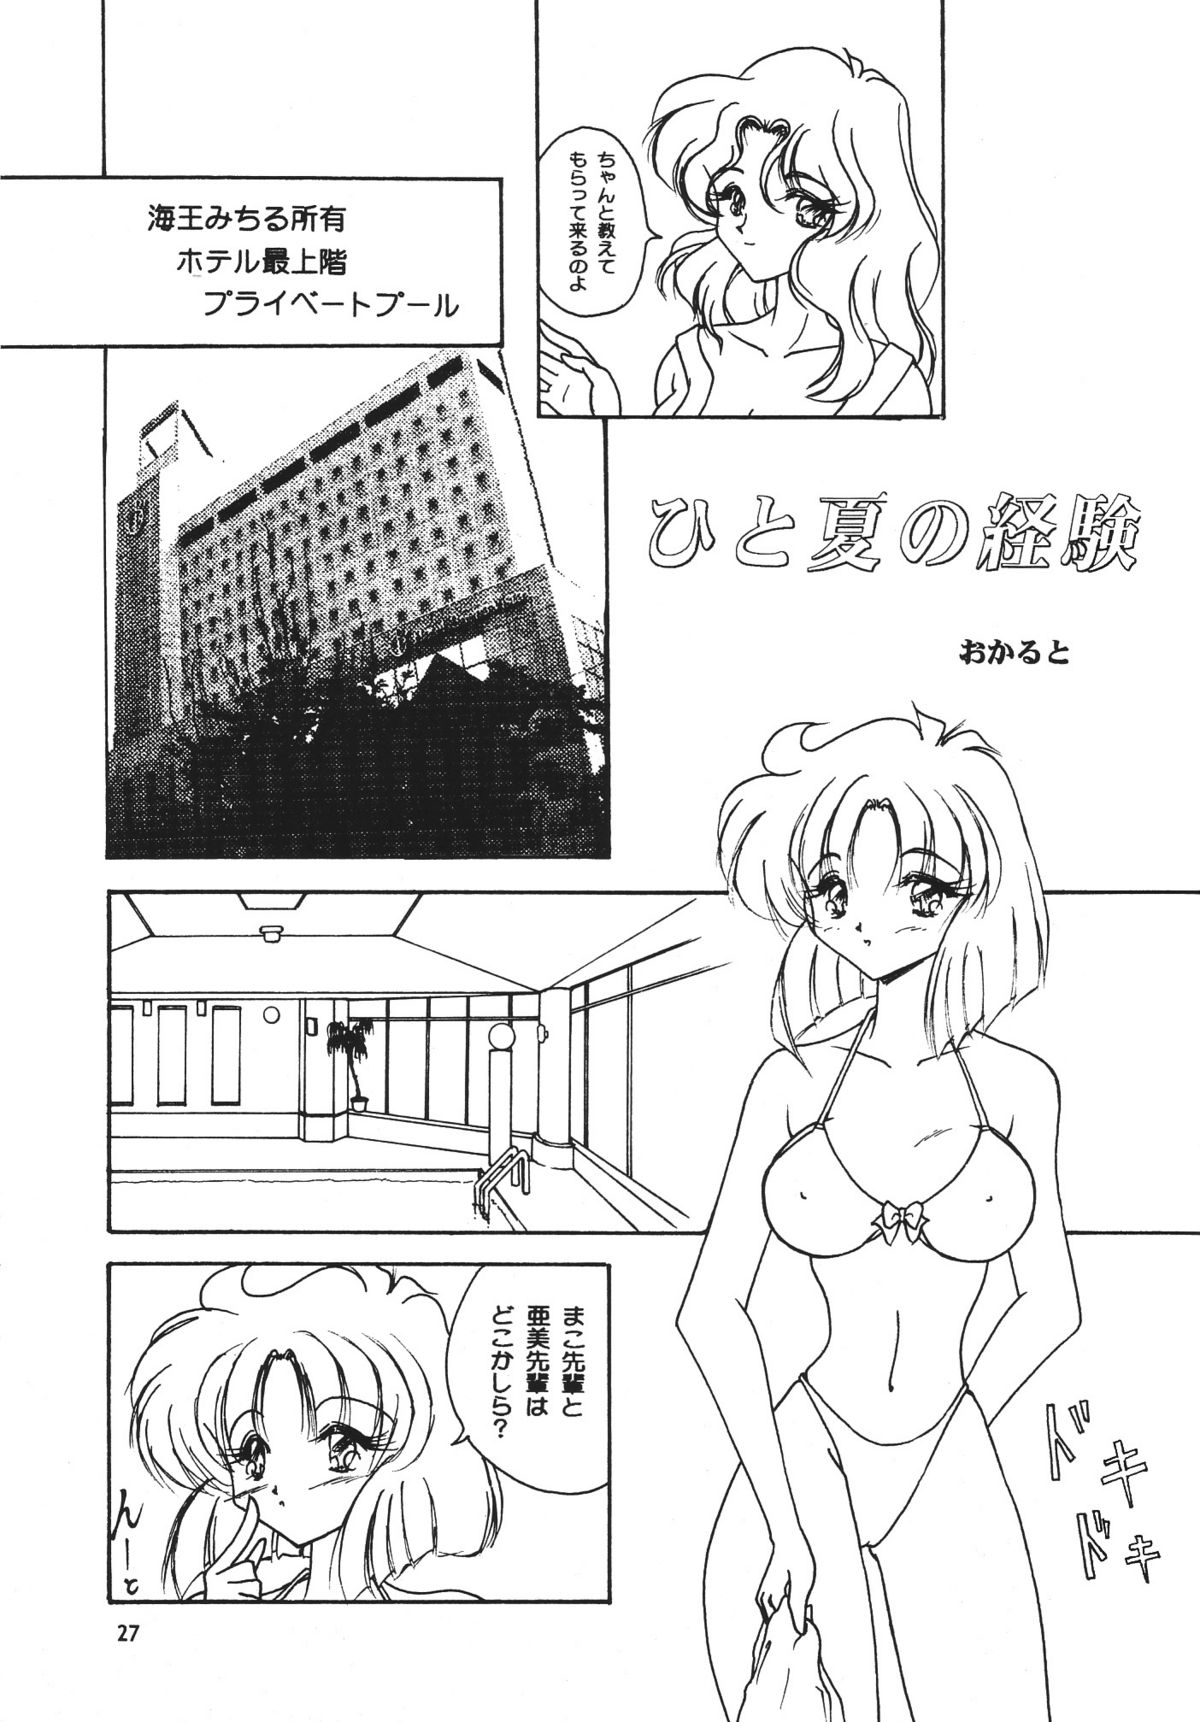 [Seishun No Nigirikobushi!] Favorite Visions 2 (Sailor Moon, AIKa) page 29 full